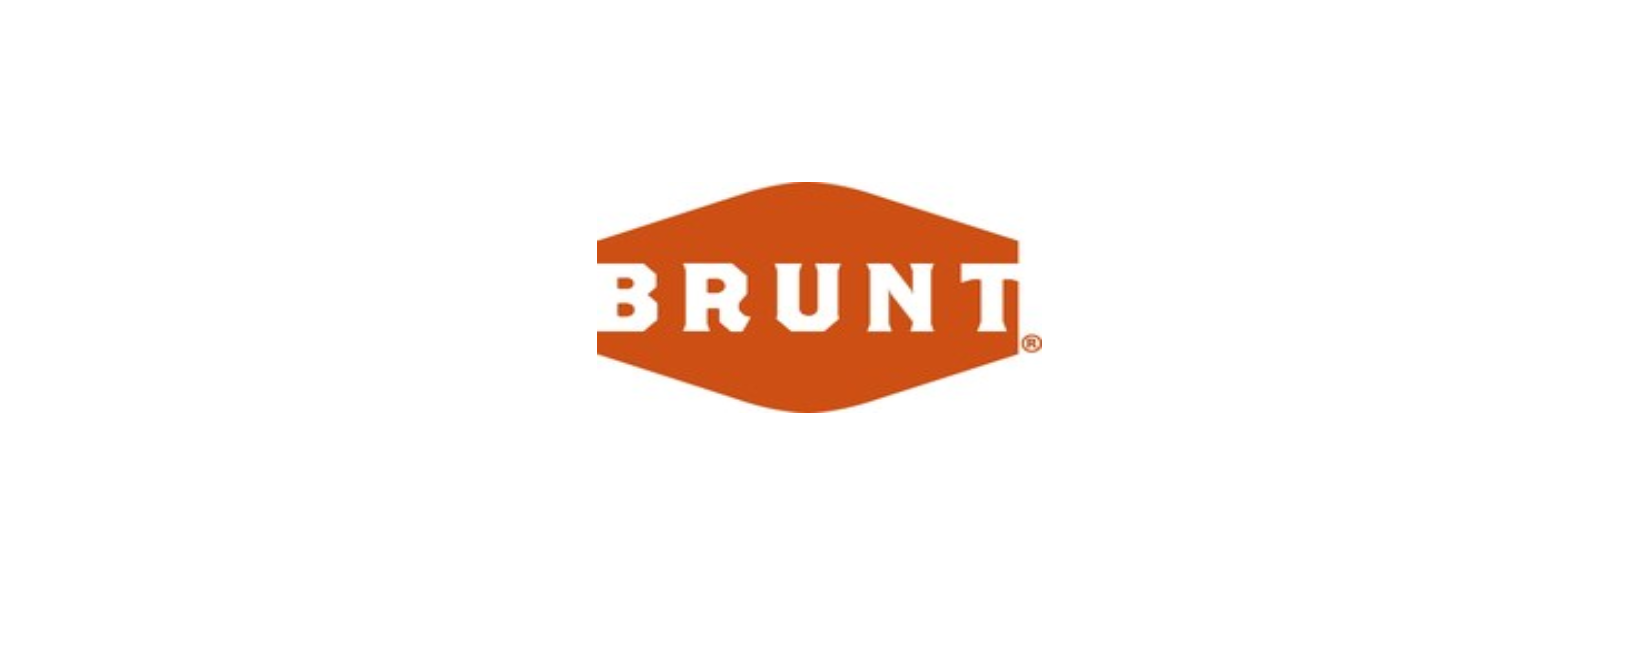 BRUNT Discount Code 2022